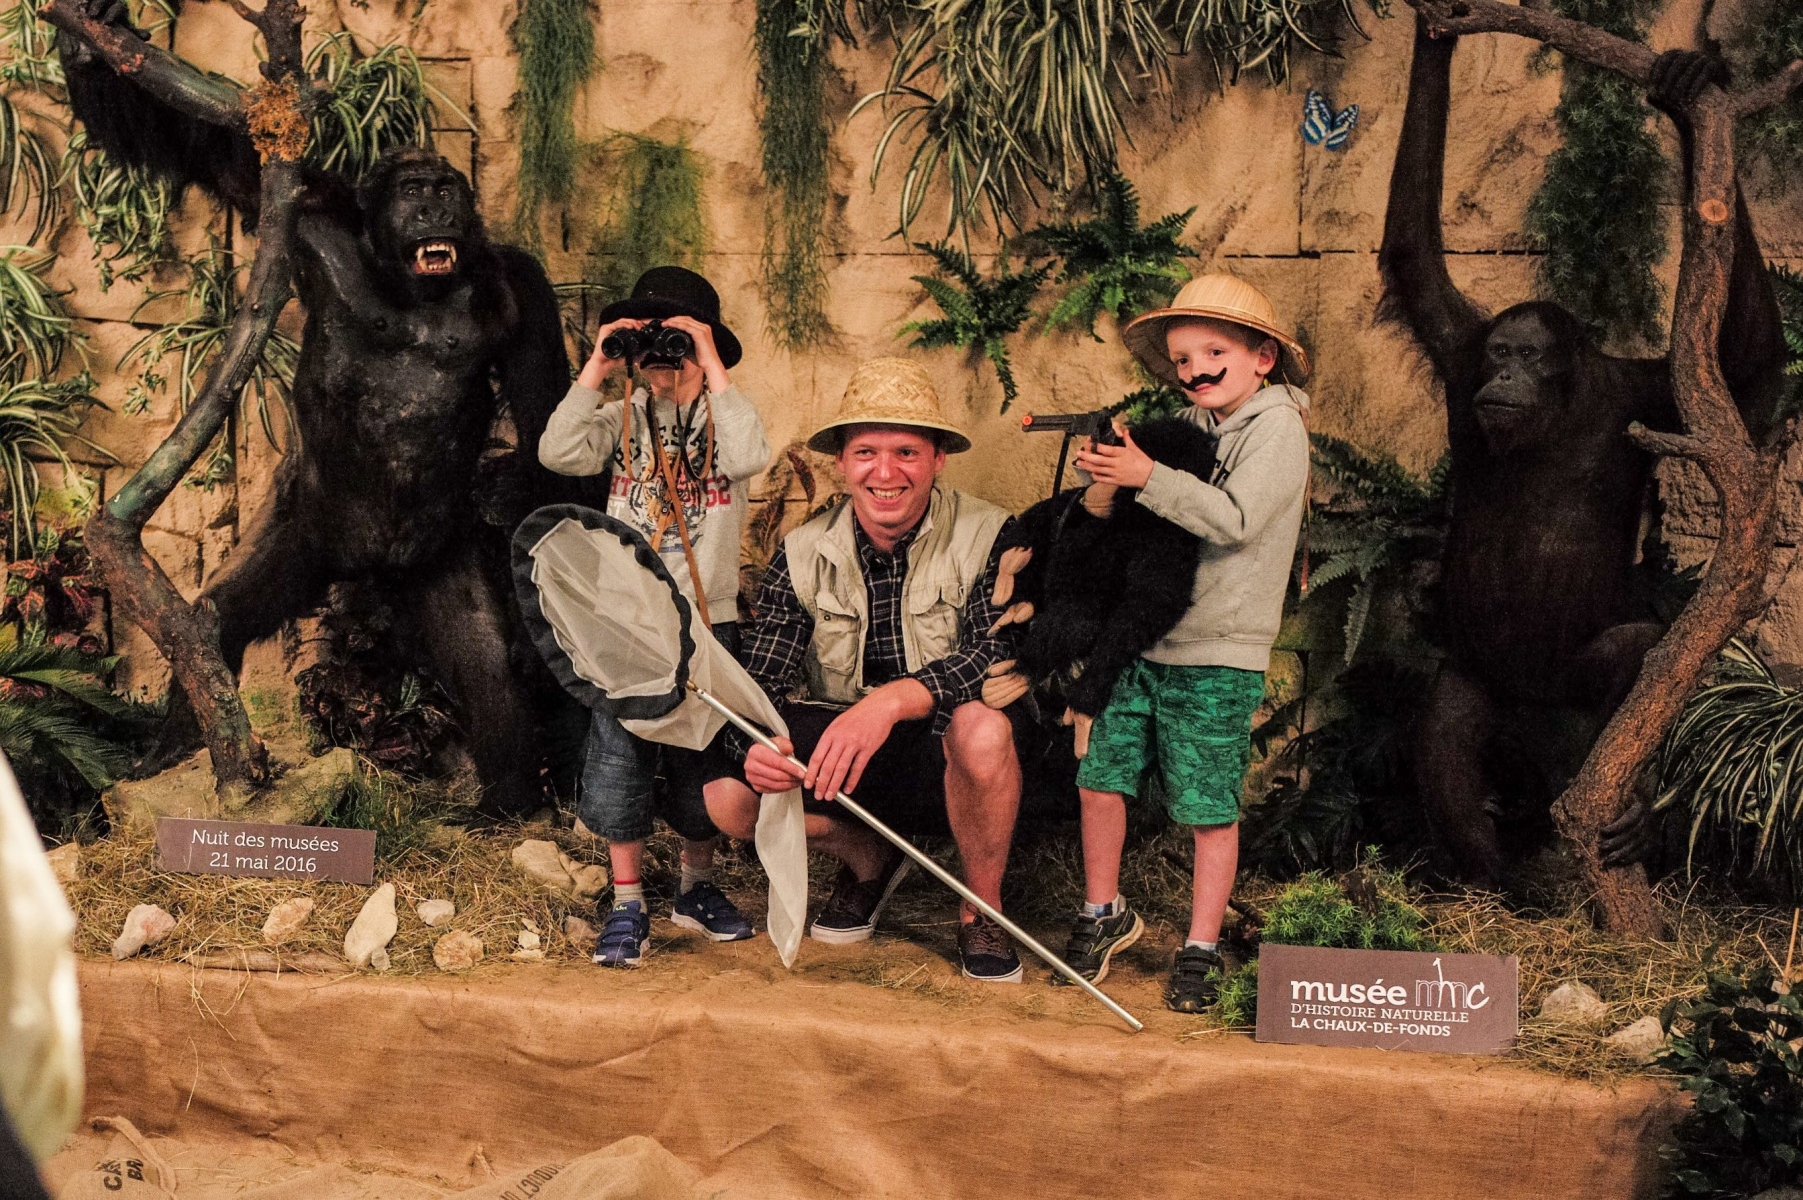 Musee d'histoire naturelle expo "Gare aux Gorilles"





LA CHAUX-DE-FONDS 21 05 2016 

Photo: Christian Galley